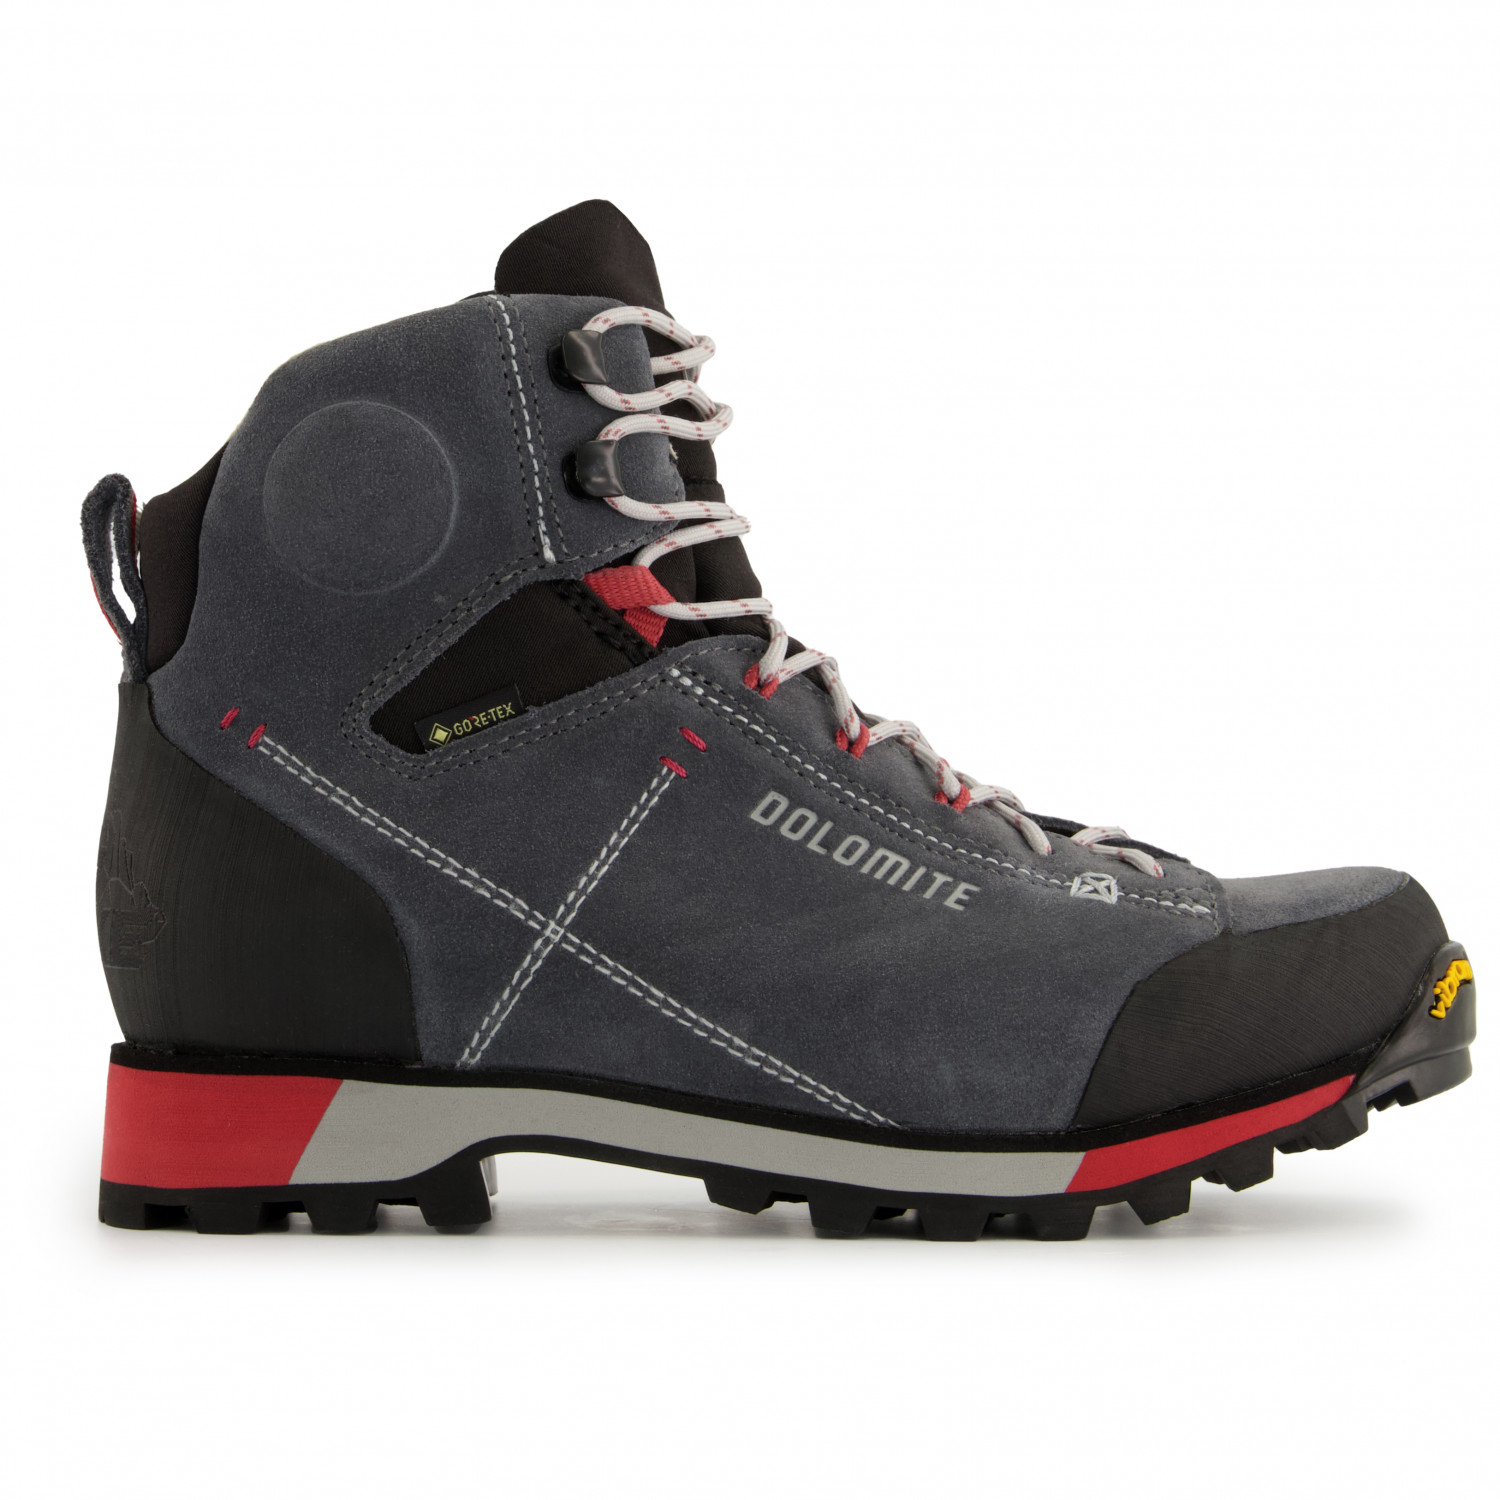 Ботинки для прогулки Dolomite Women's 54 Hike Evo GTX, цвет Gunmetal Grey